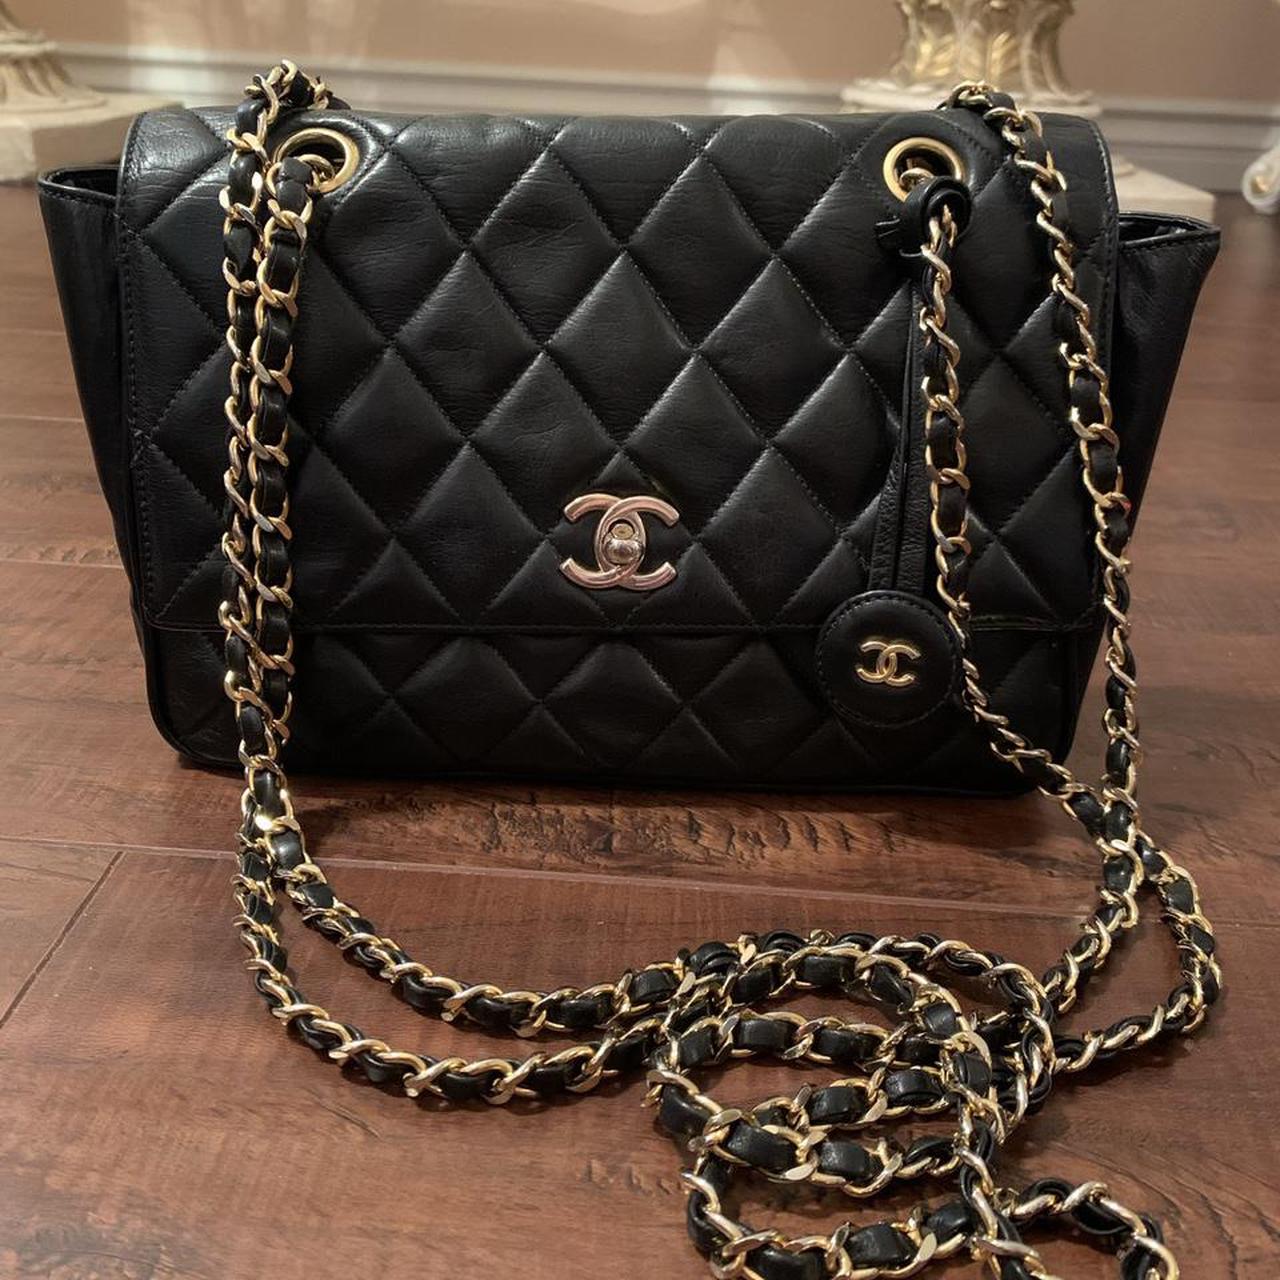 Chanel Women's Crossbody Bags - Black